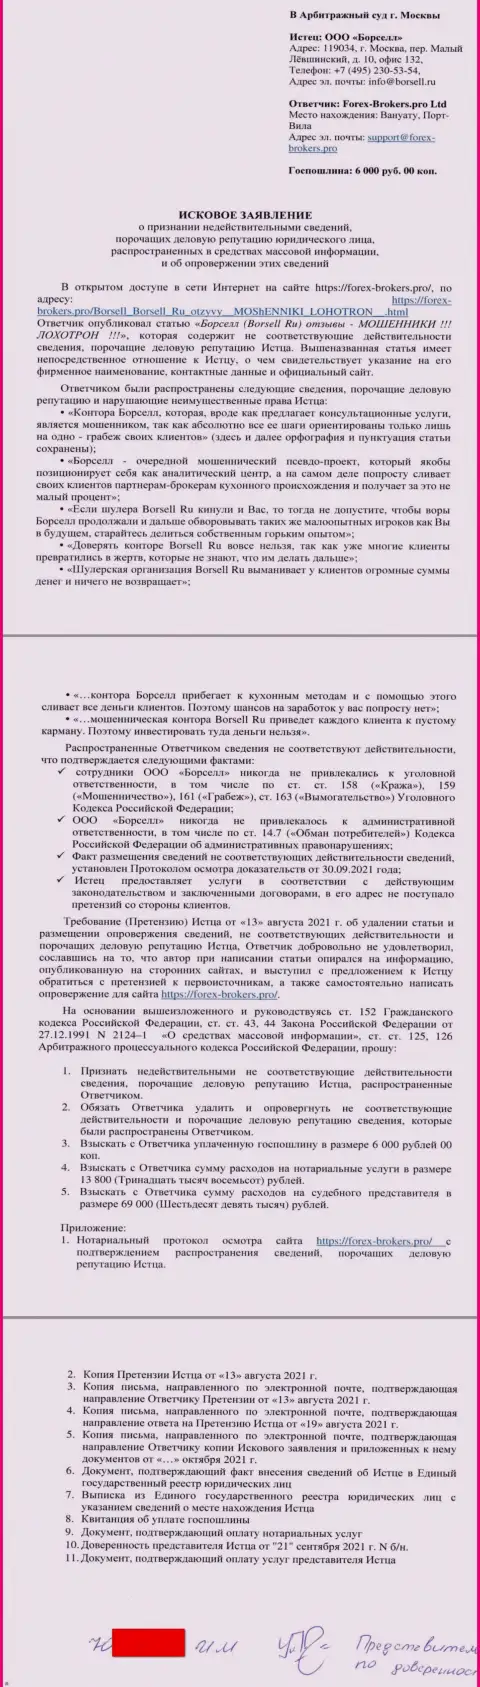 Само исковое заявление в суд жуликов ООО БОРСЕЛЛ